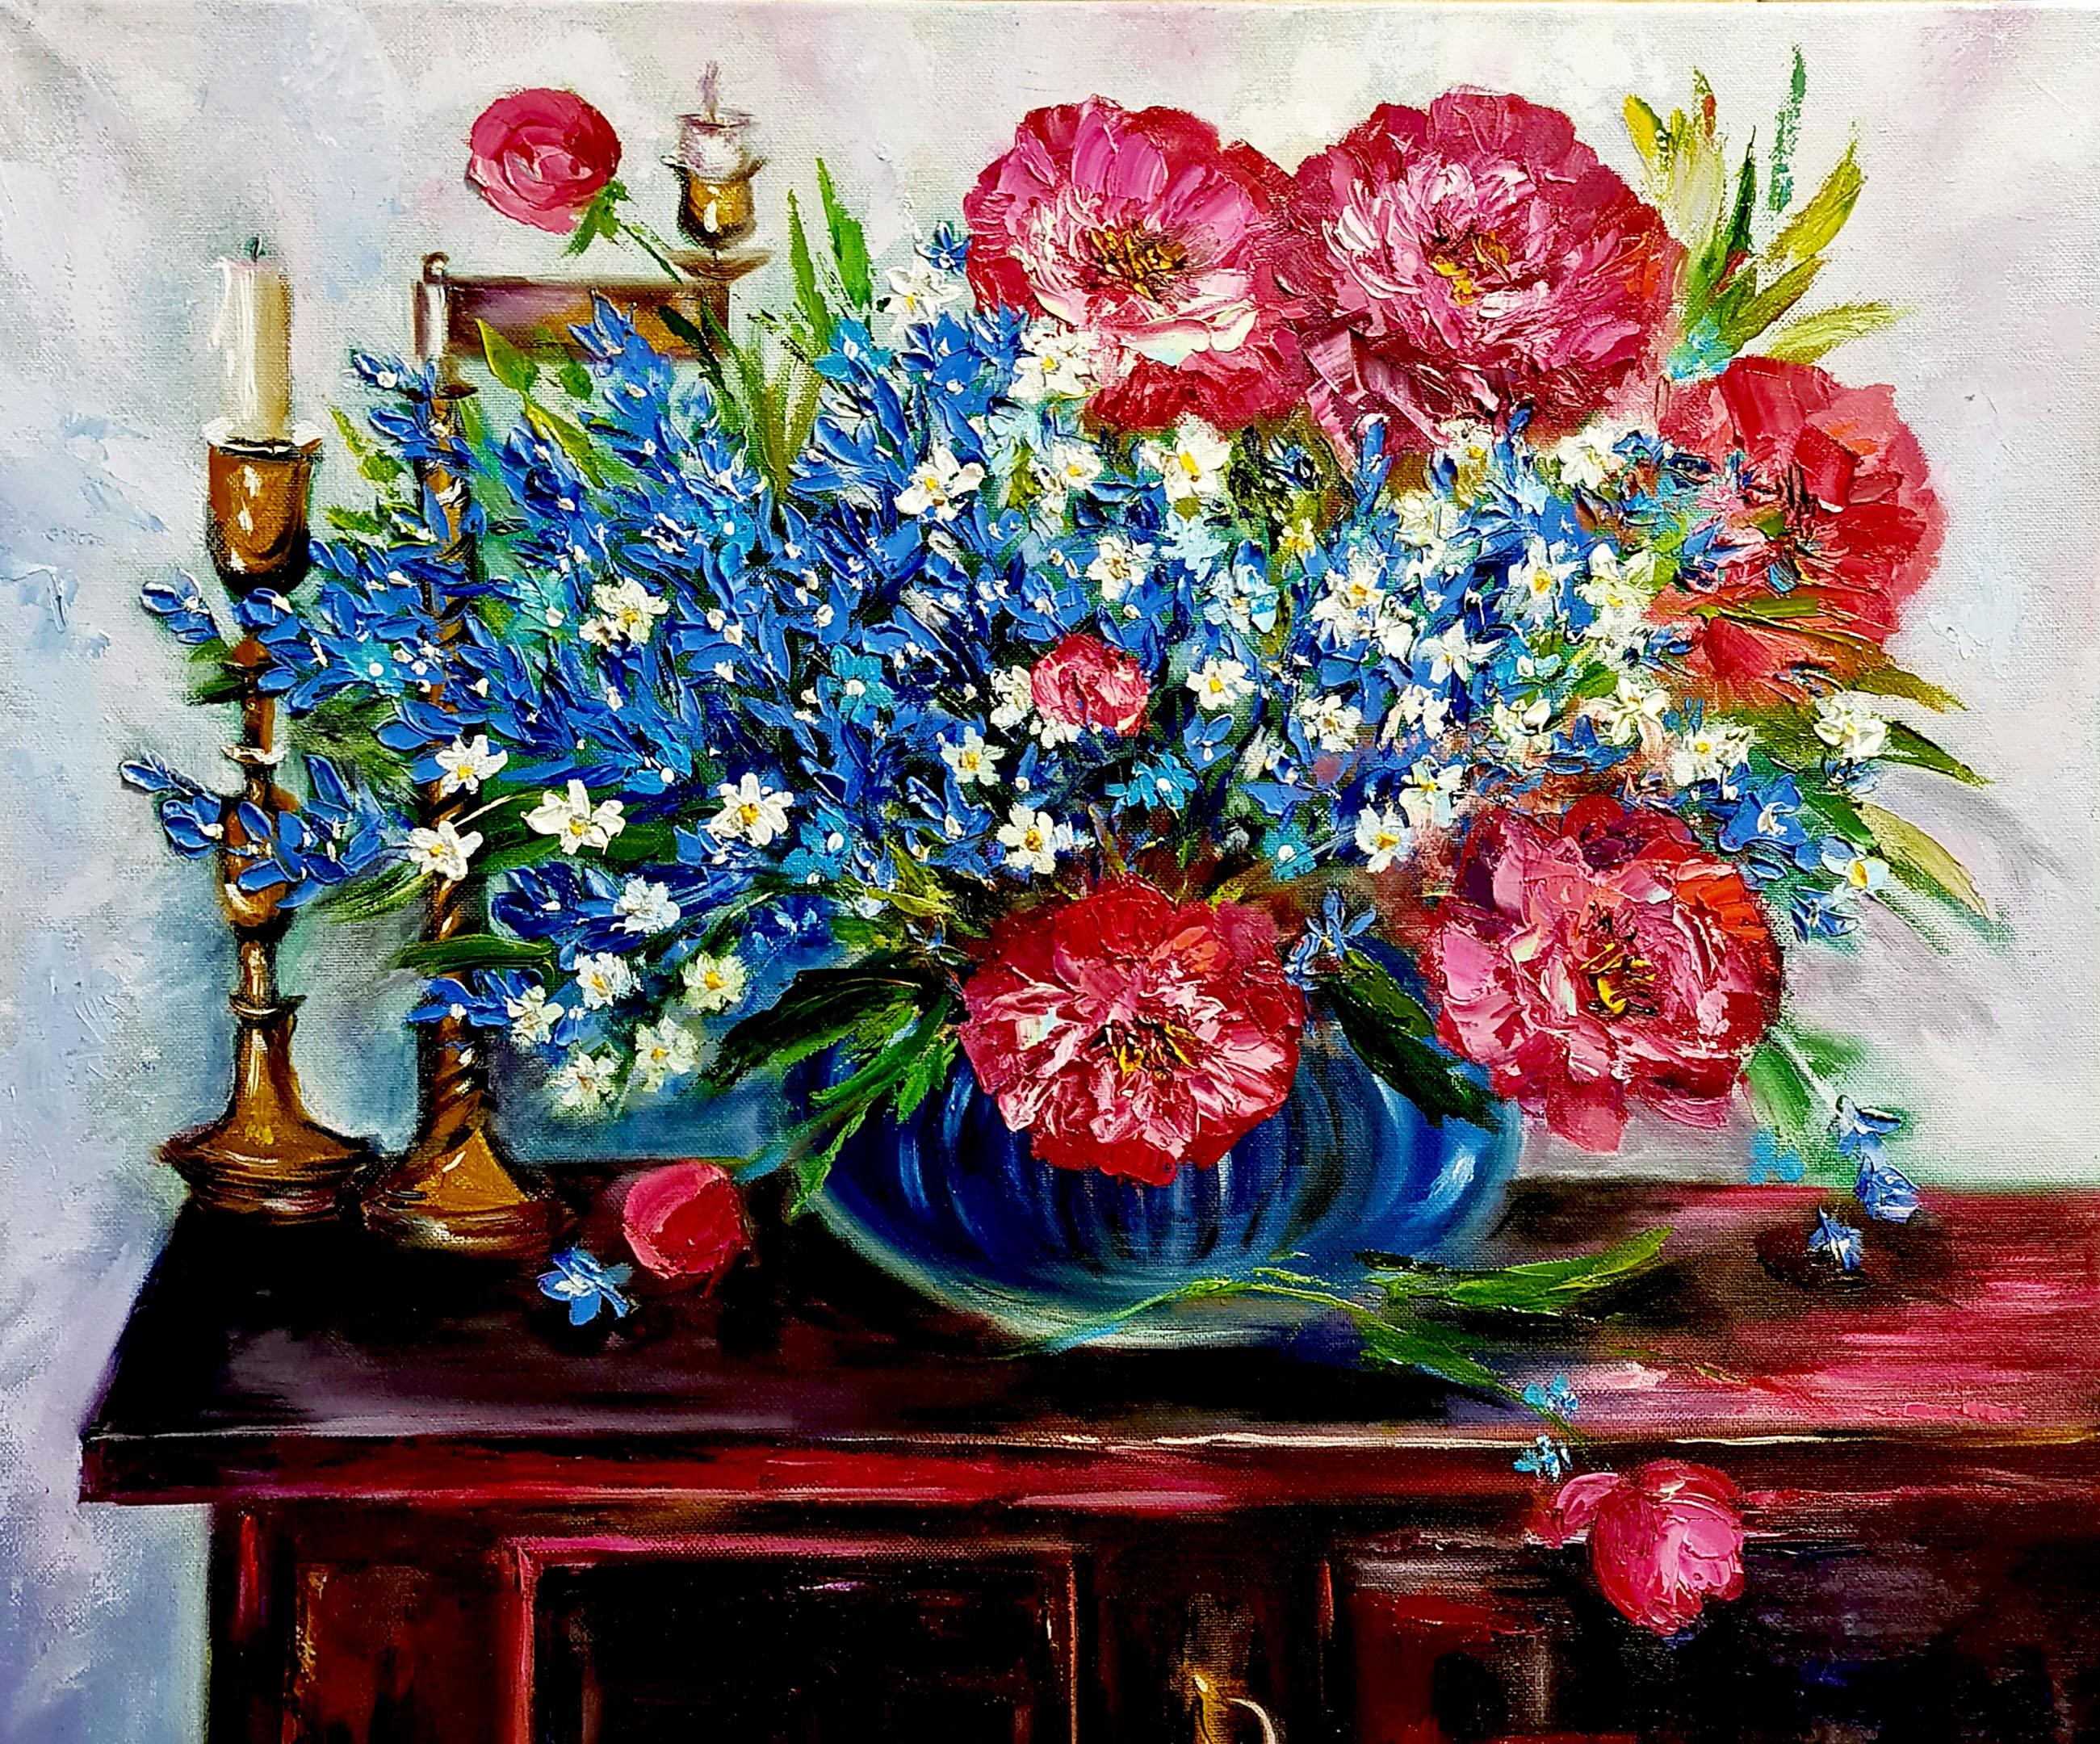 Des pivoines bourgognes, des fleurs bleues dans un vase.Candles et table d'antiquités